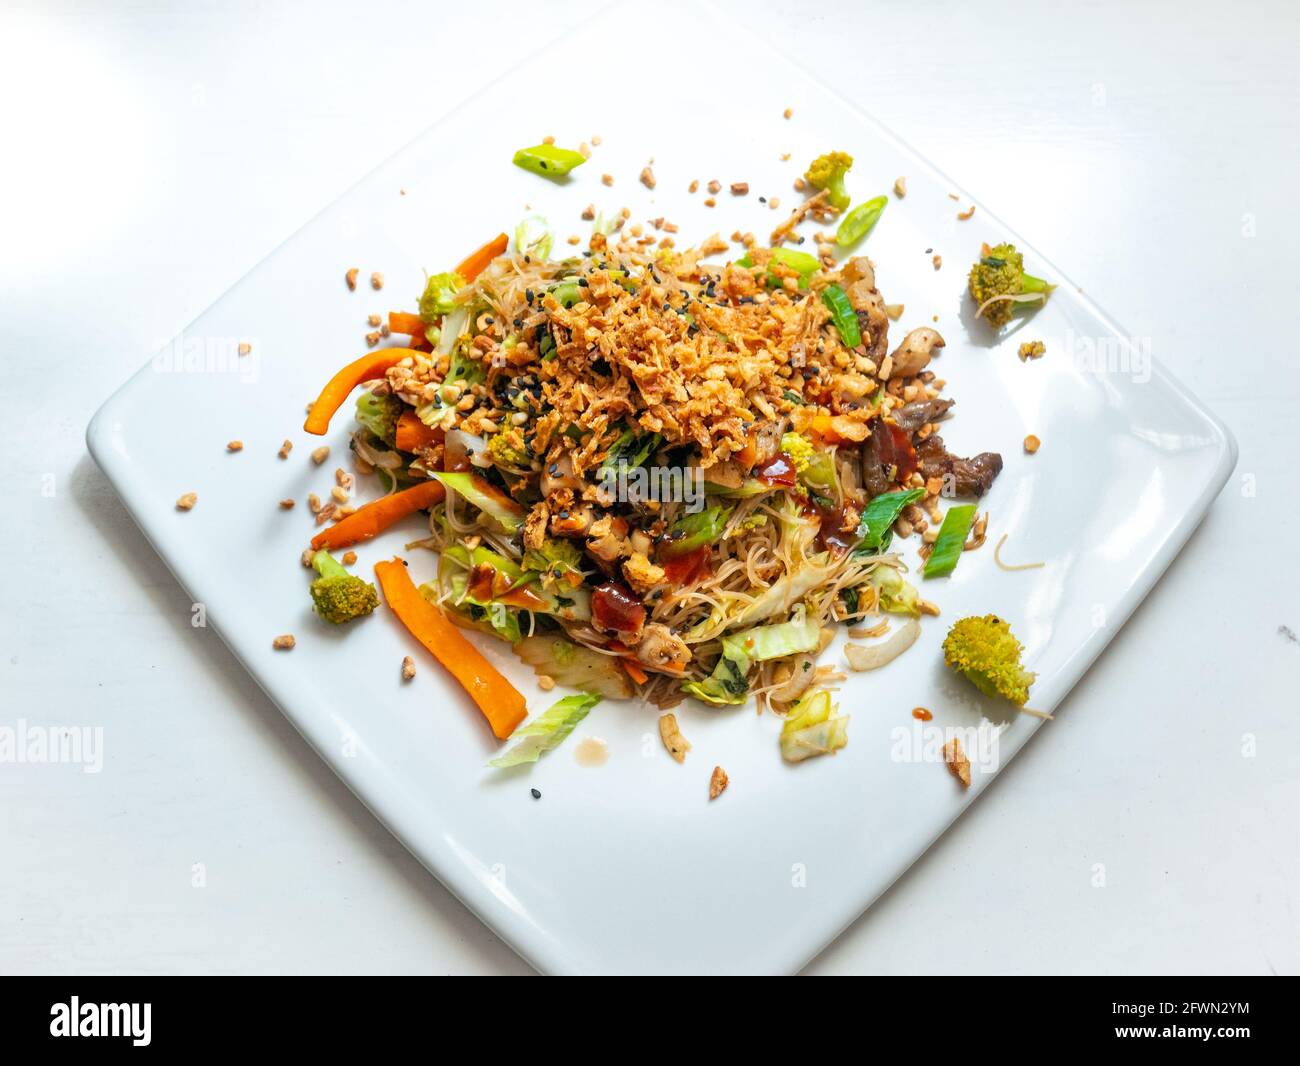 Pad Thai Vegan, Arroz de fideos con verduras salteadas, Broccoli, Carrot, cebolla blanca y verde, setas de la ostra, cacahuetes picados Foto de stock